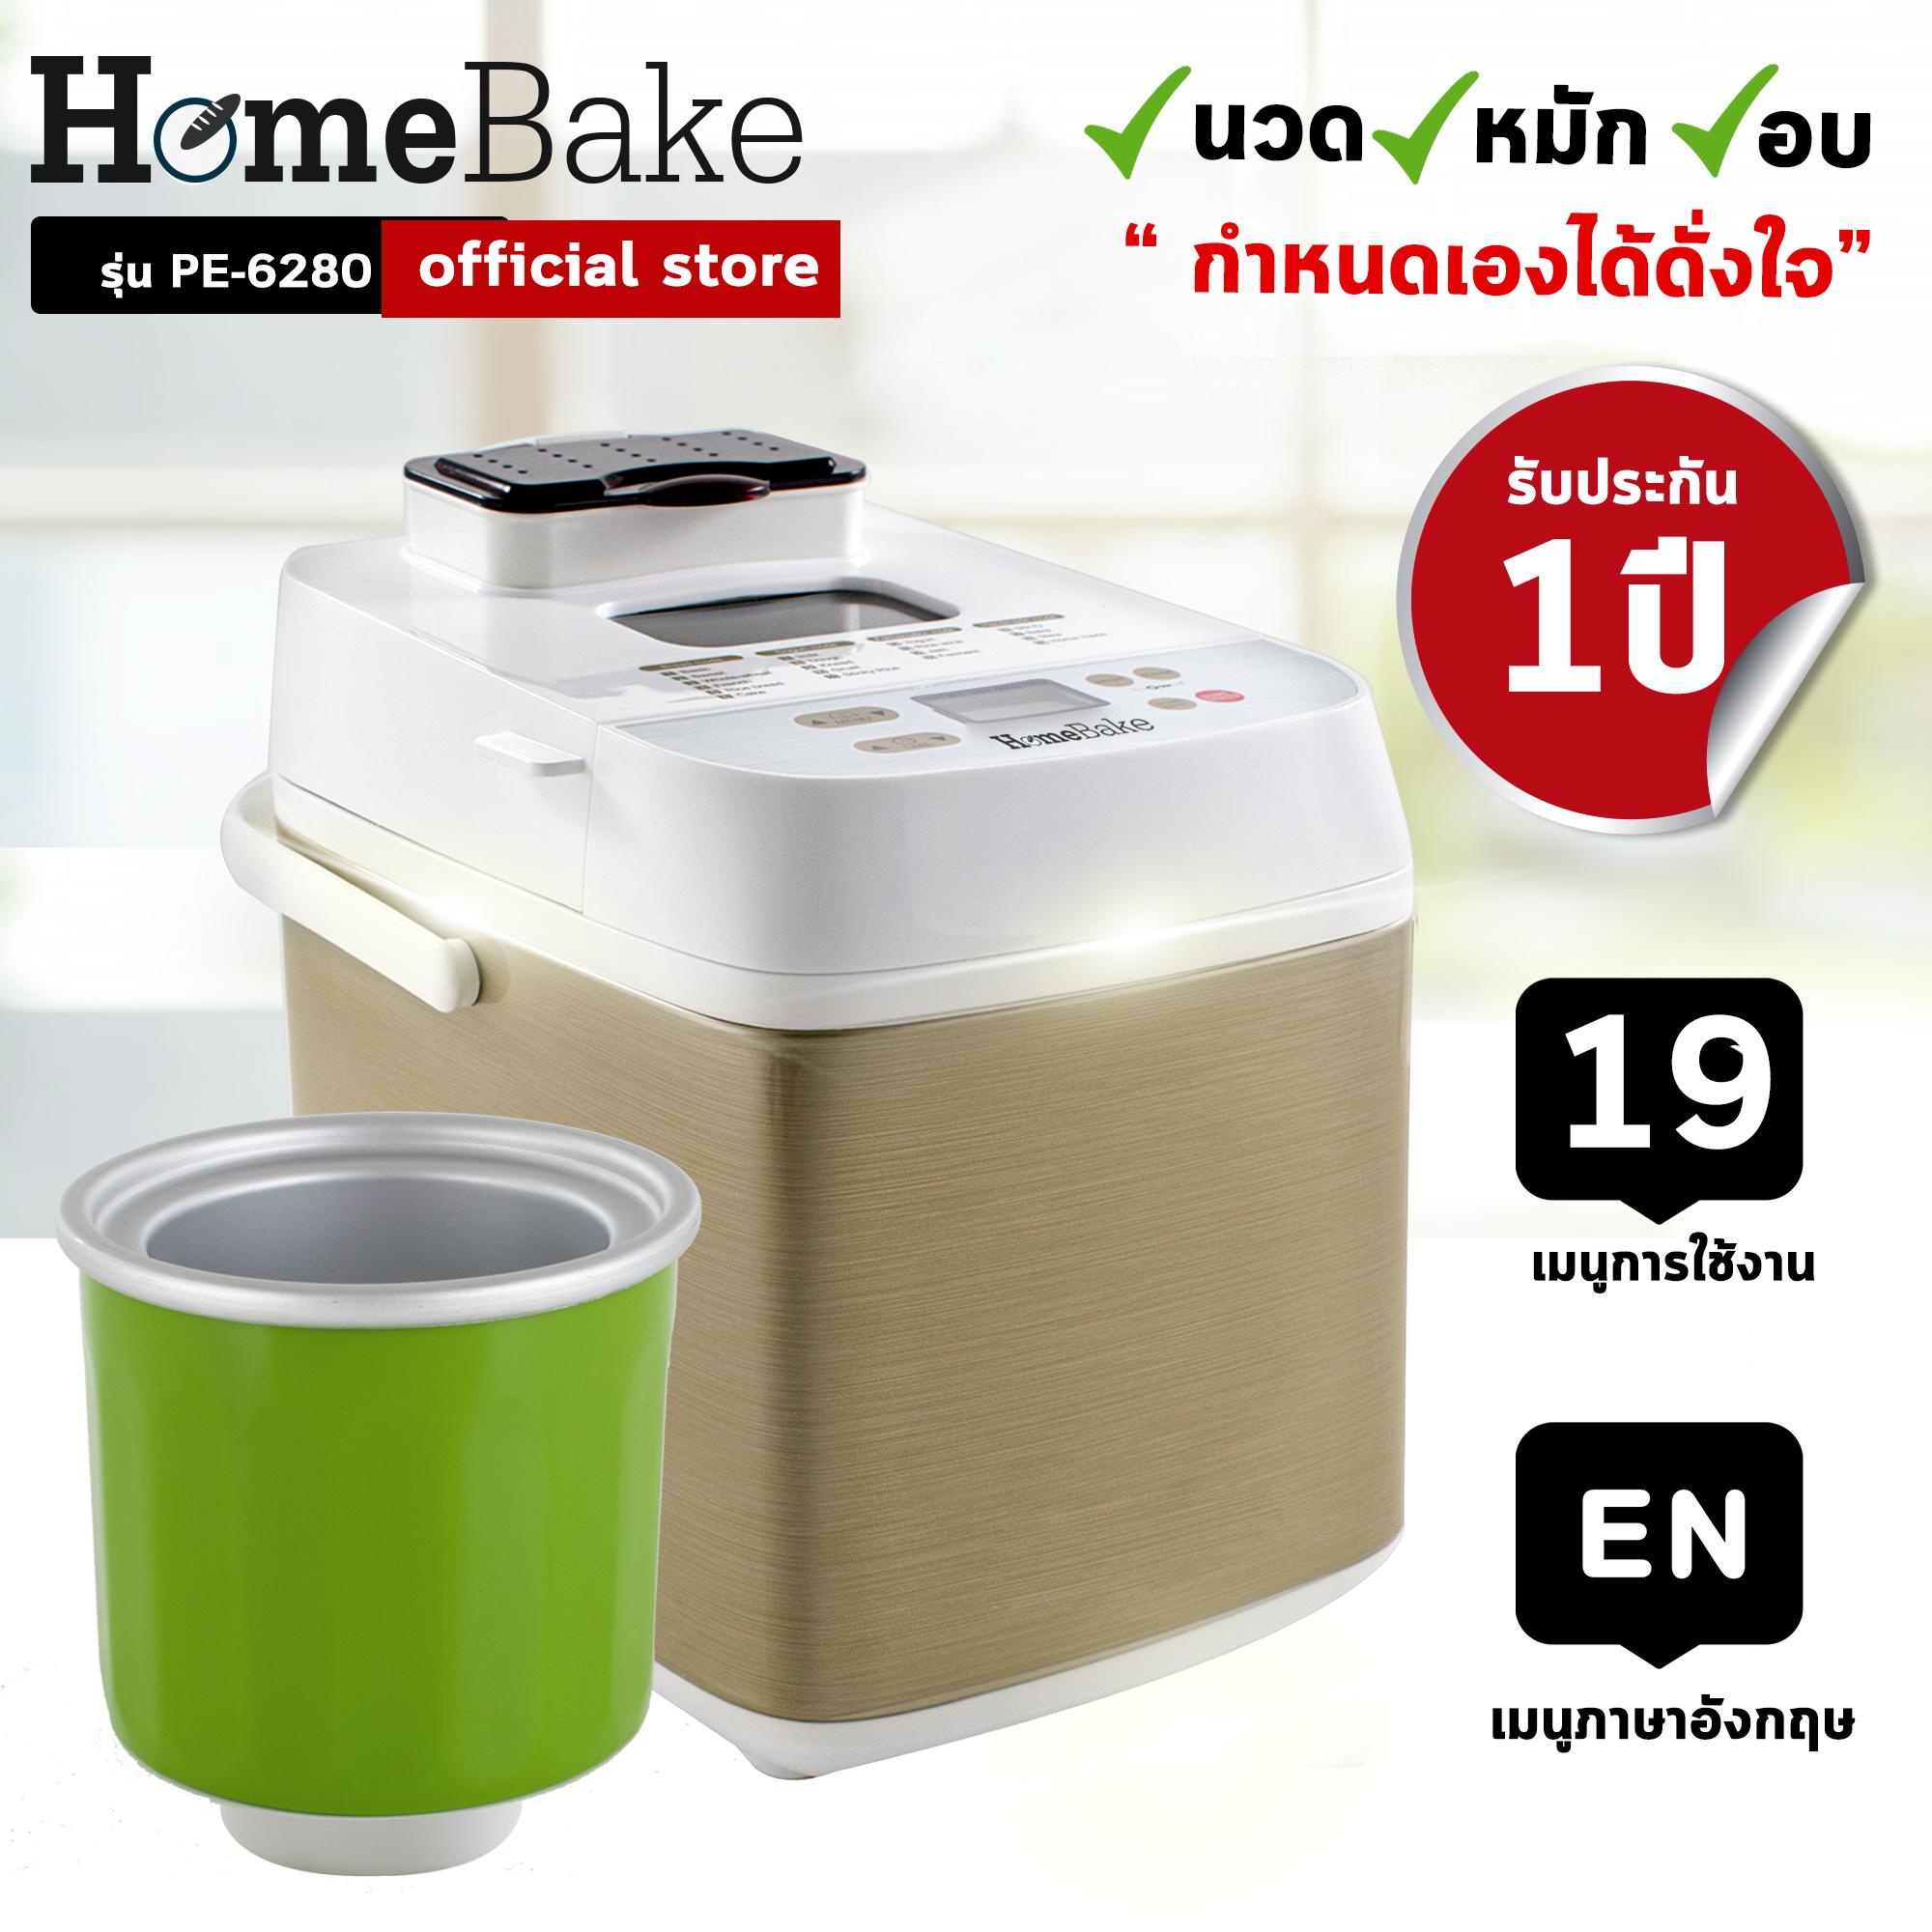 เครื่องทำขนมปังอเนกประสงค์ HomeBake รุ่น PE6280 พร้อมโถทำไอศกรีม